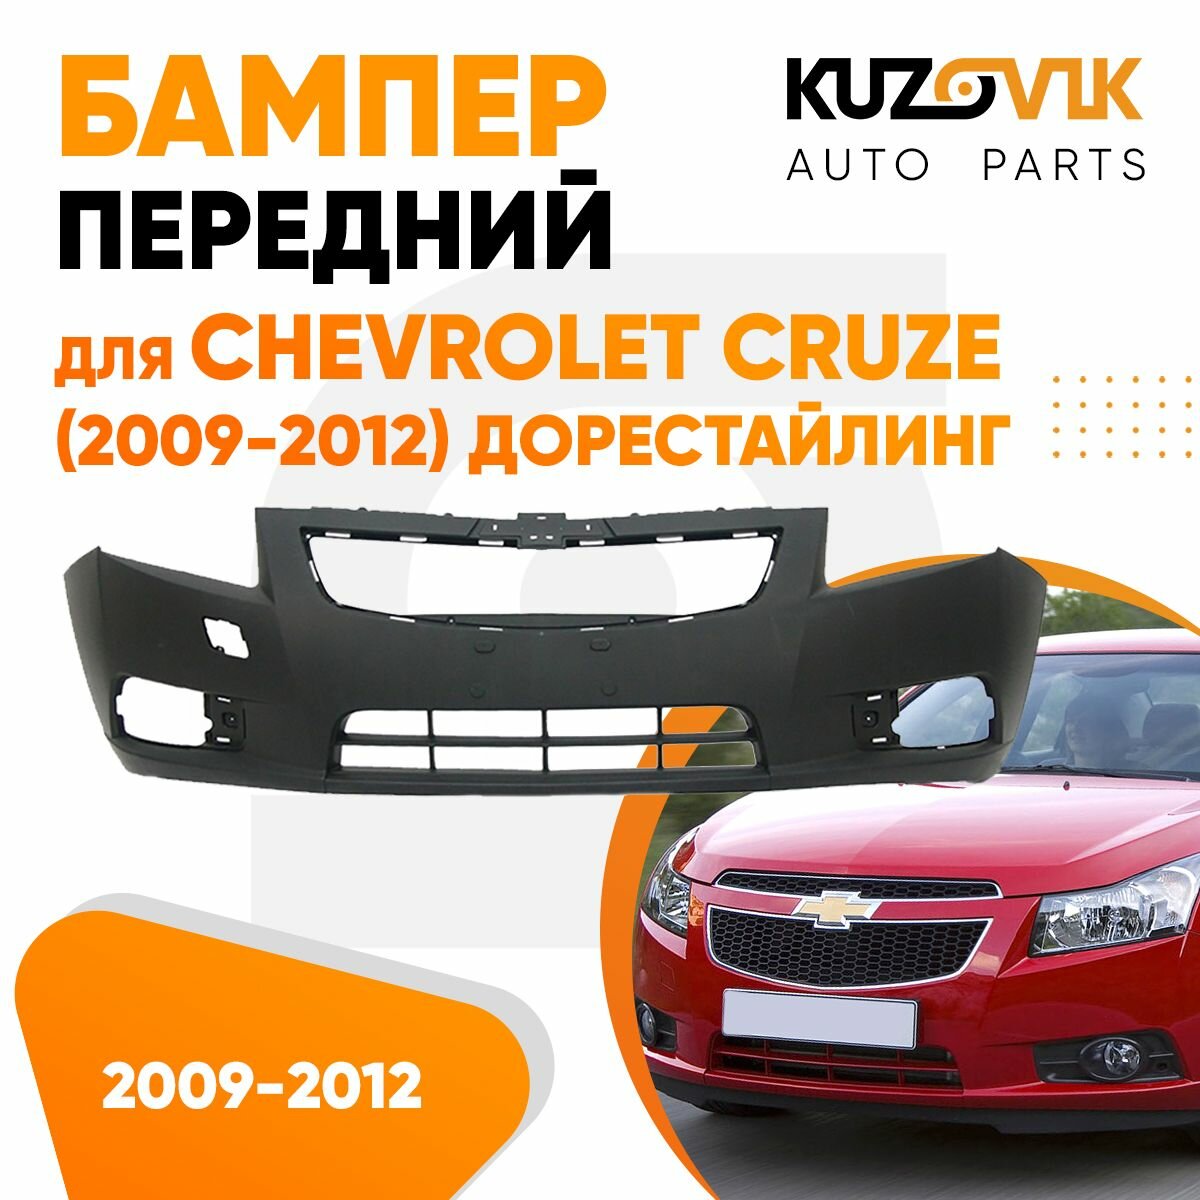 Бампер передний Chevrolet Cruze (2009-2012) дорестайлинг